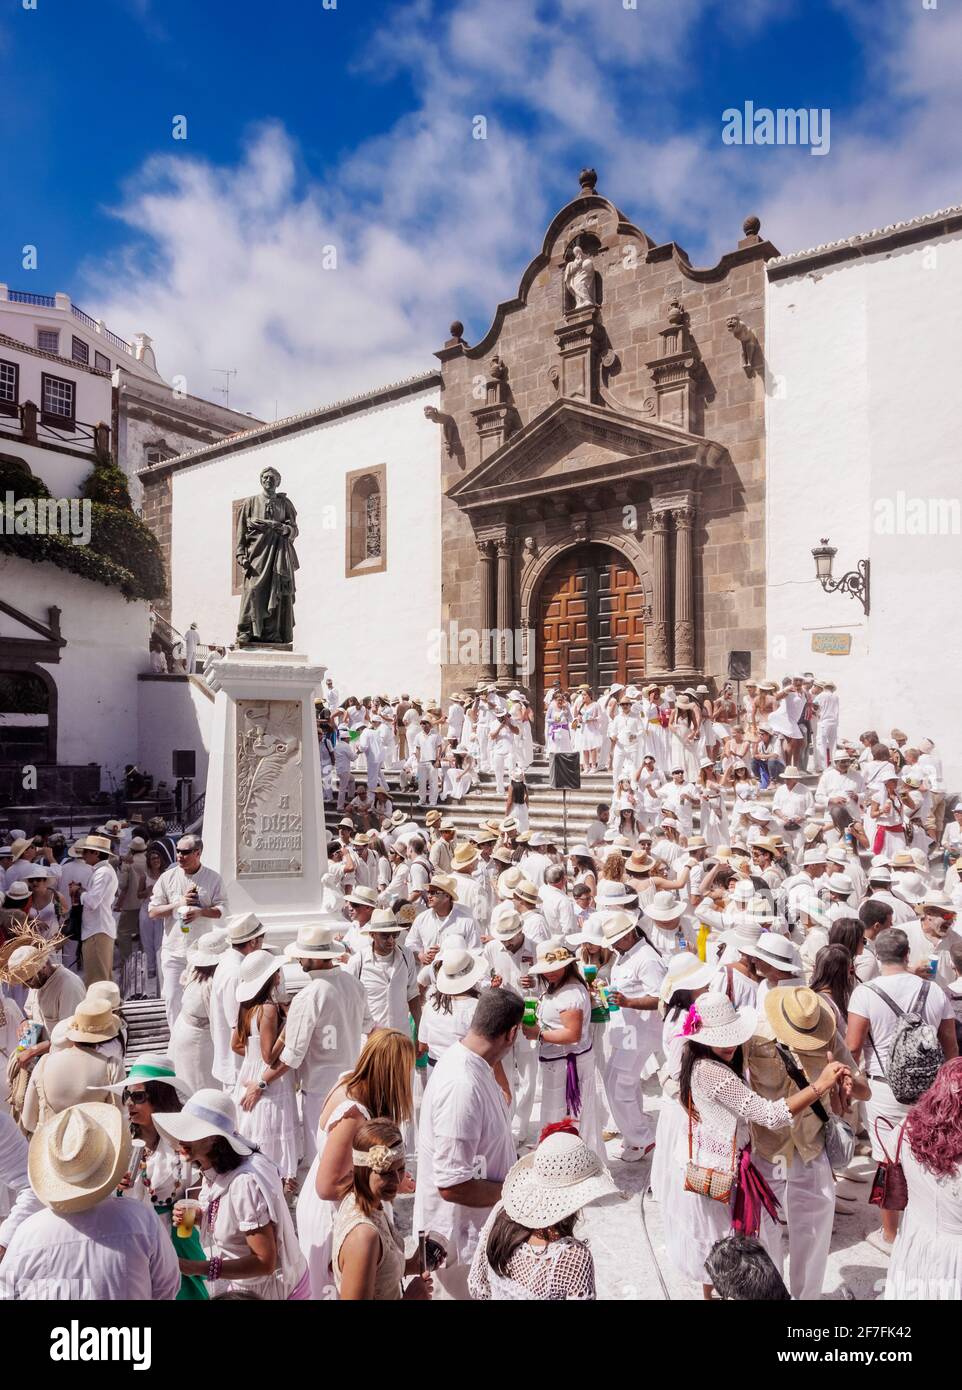 Los Indianos Carnival Party auf der Plaza de Espana vor der Kirche El Salvador, Santa Cruz de La Palma, Kanarische Inseln, Spanien, Europa Stockfoto